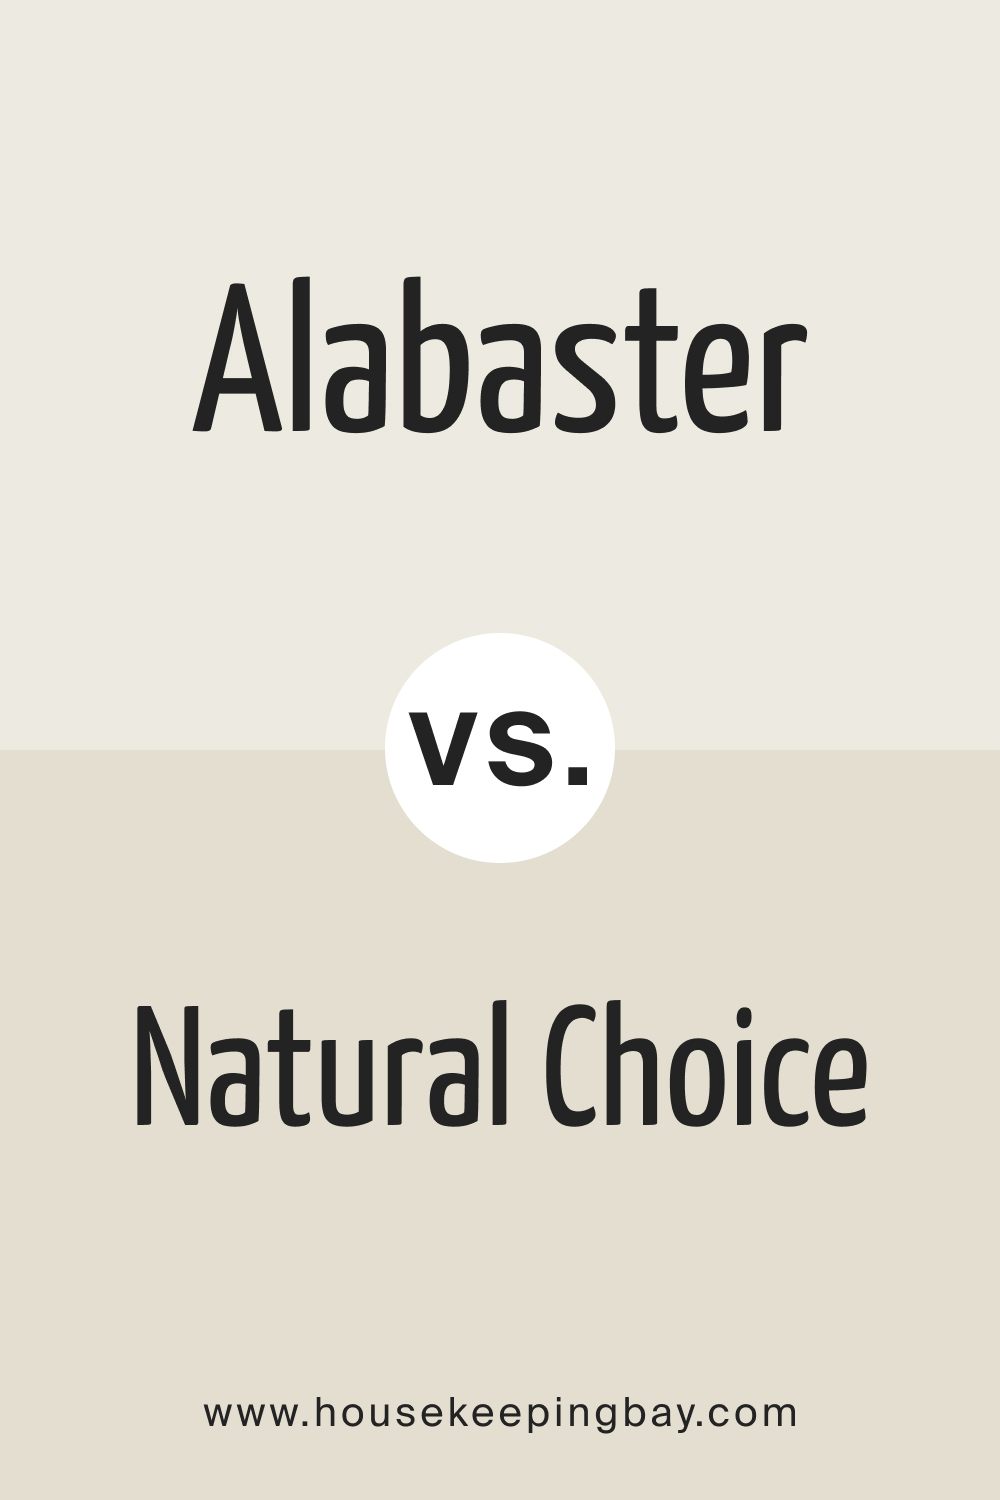 Alabaster vs. Natural Choice